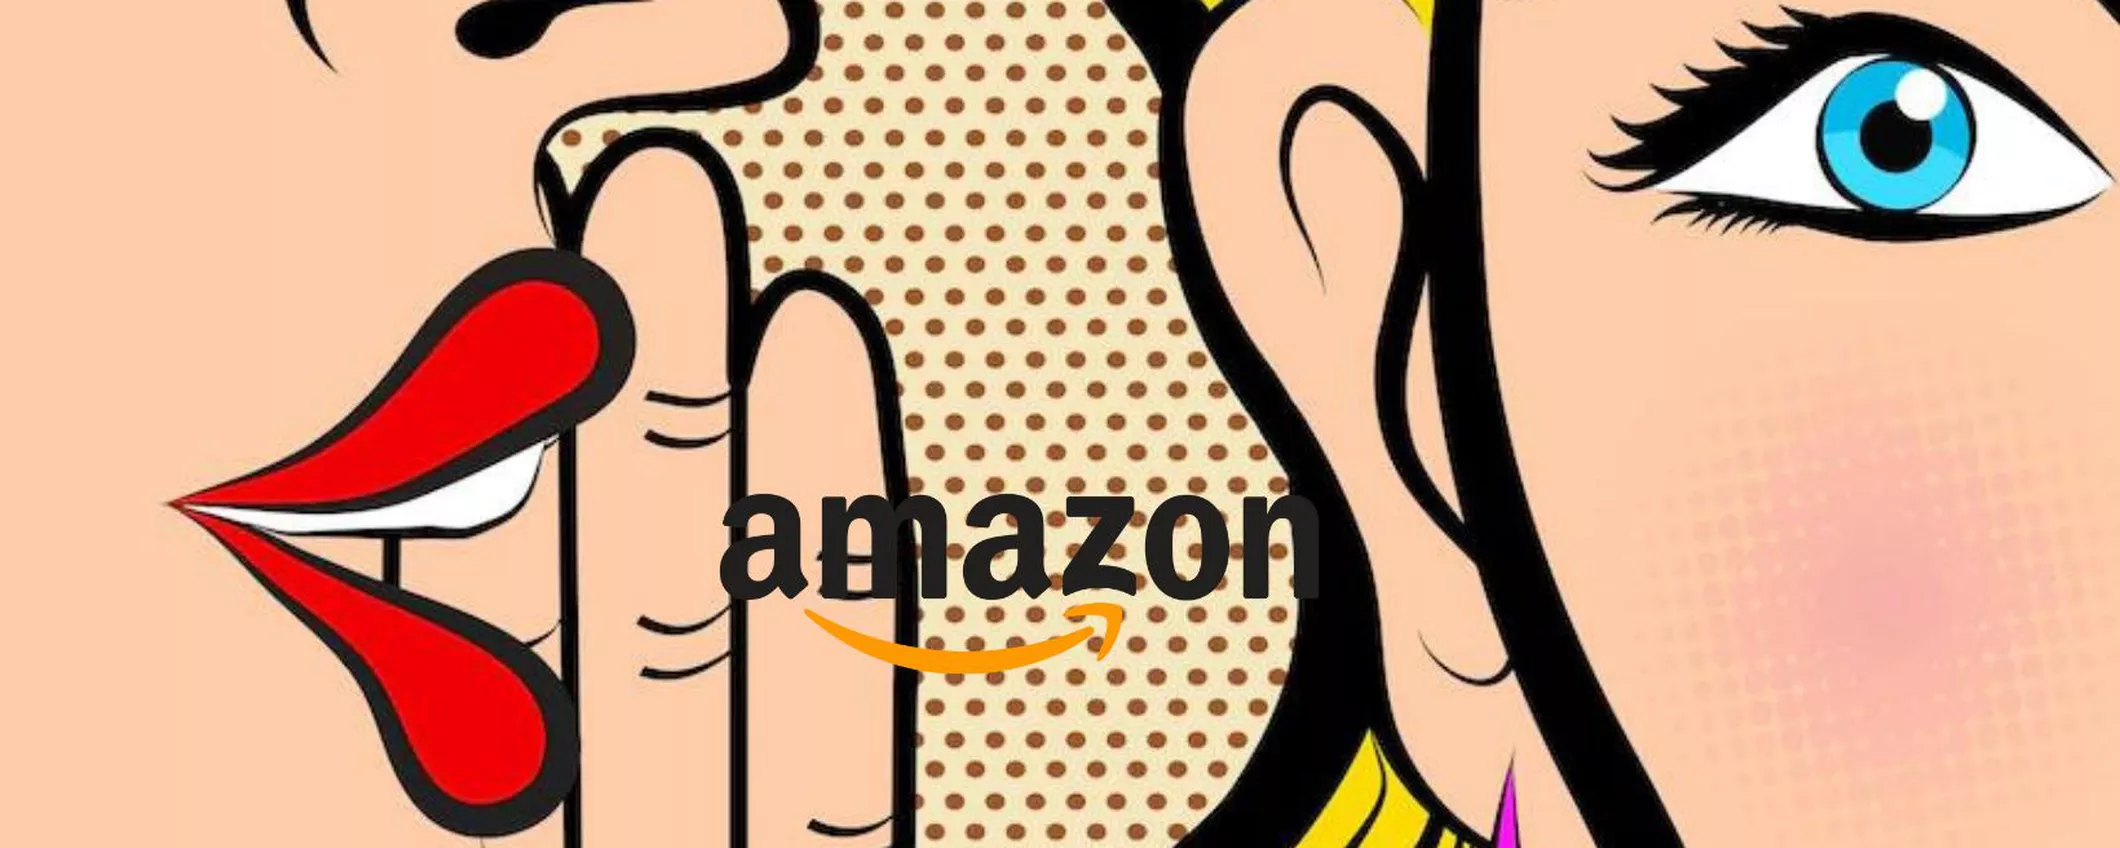 Amazon SEGRETO: dieci OGGETTI CURIOSI che non conoscevi ma di cui ti INNAMORERAI